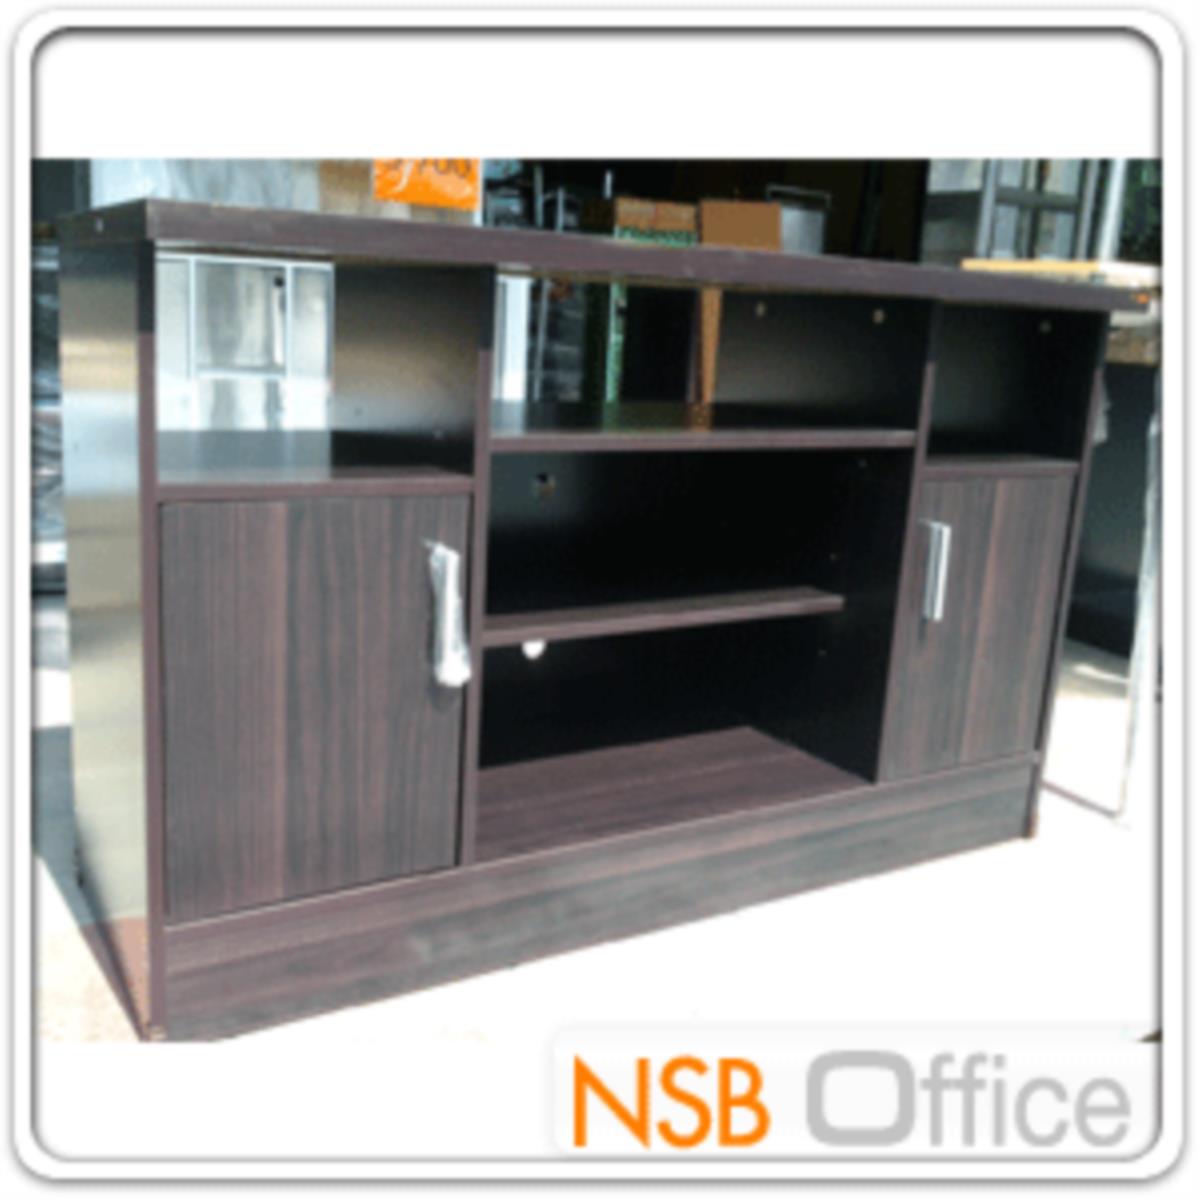 ตู้วางทีวีไม้  รุ่น NSB-8015  ขนาด 120W*76H cm. 